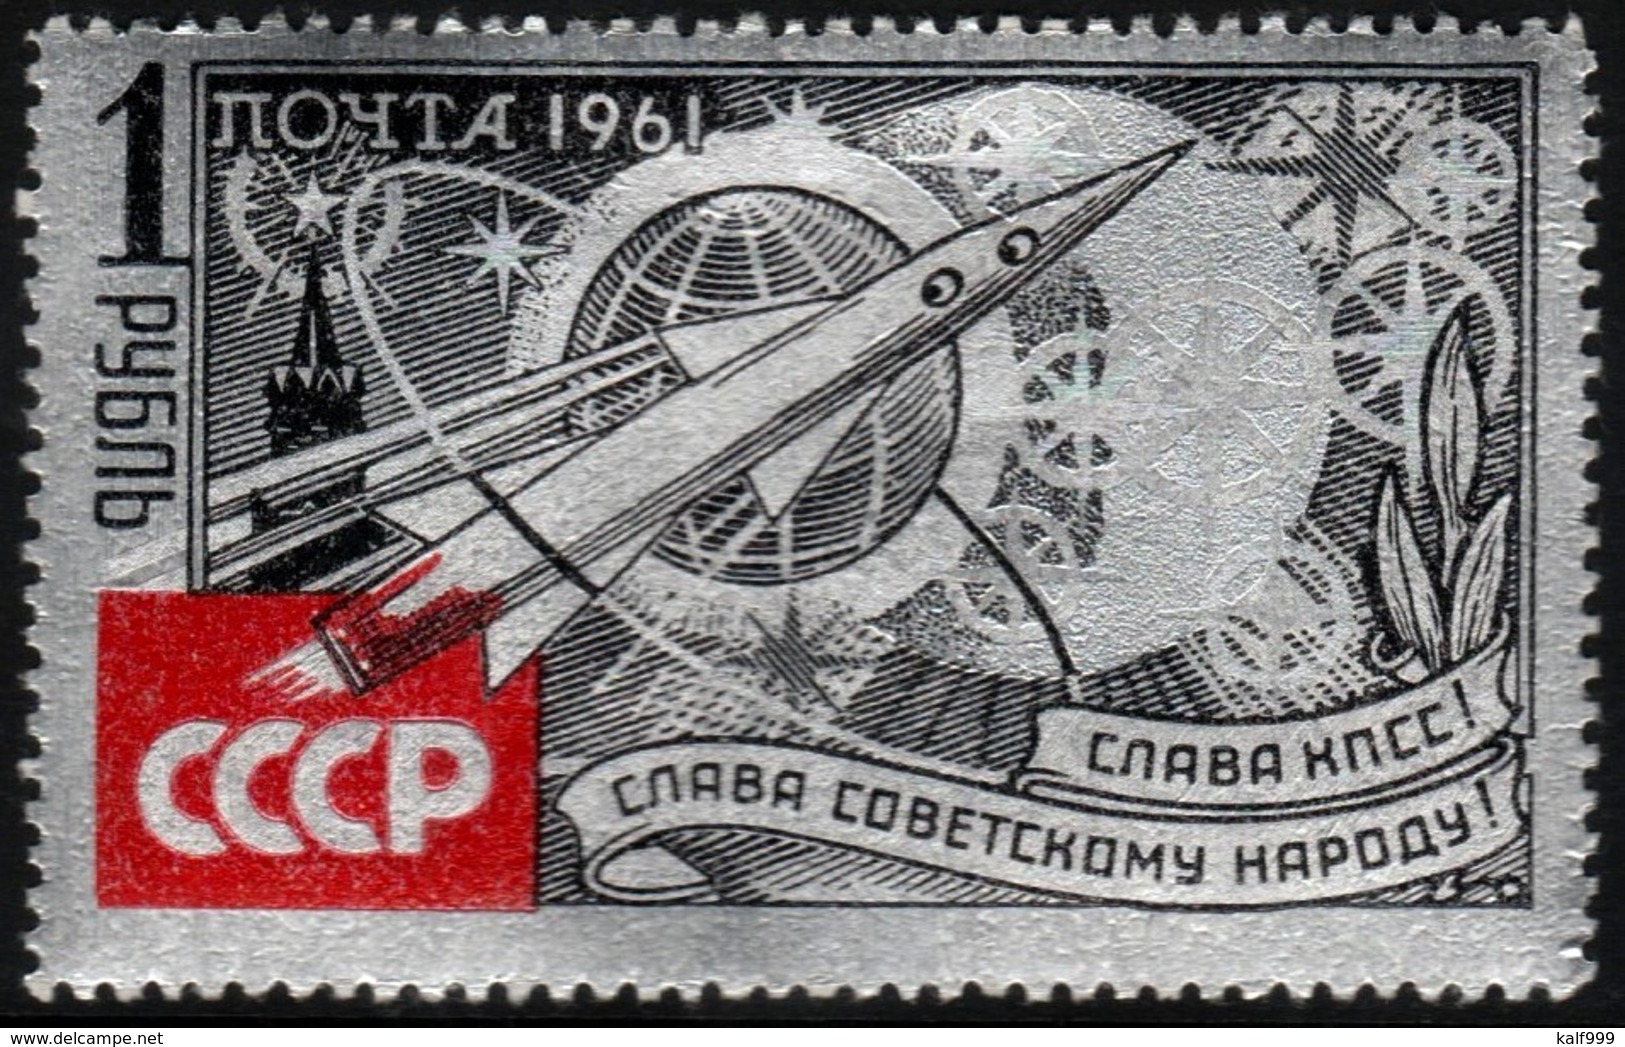 ~~~  Sowjet Union 1961 - Space Silver Foil  - Mi. 2540 MNH ** OG  CV 50.00 Euro ~~~ - Ongebruikt